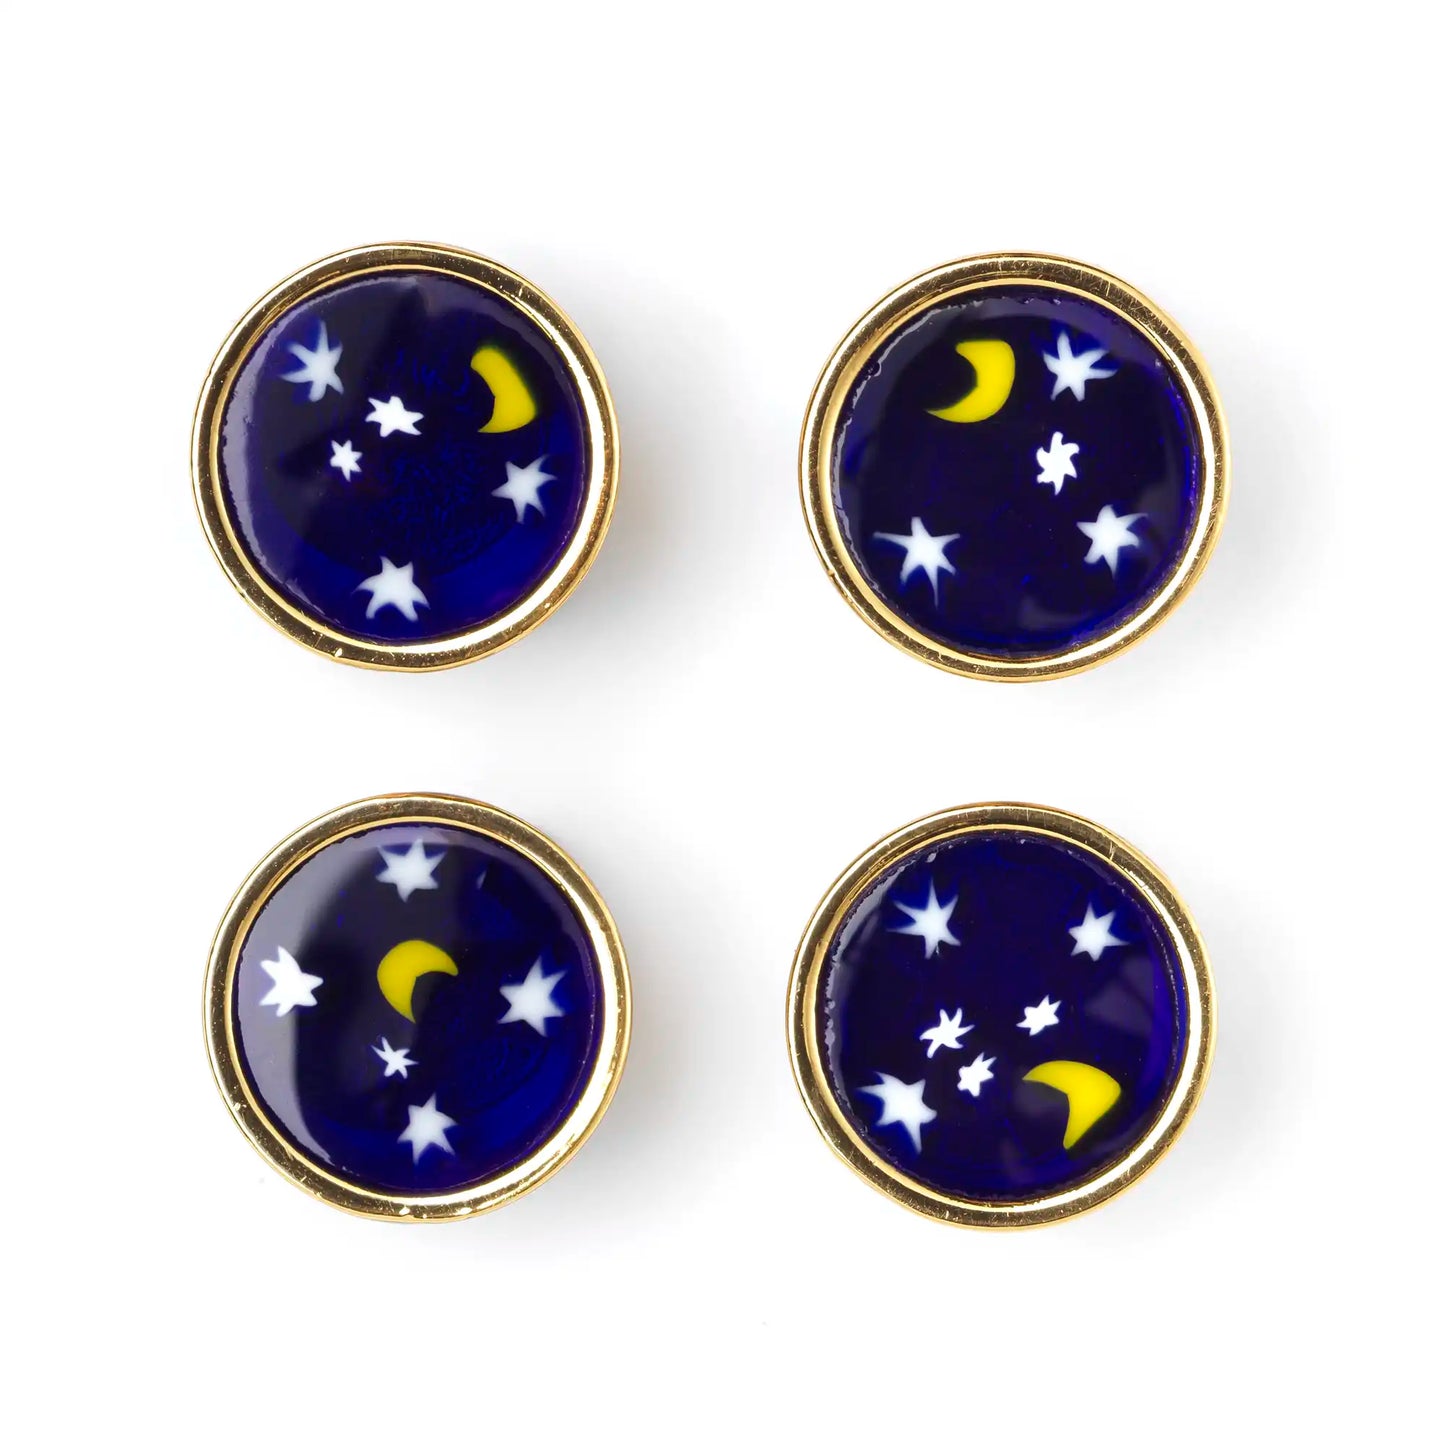 Small Murrina Glass Button - Moonlight Navy